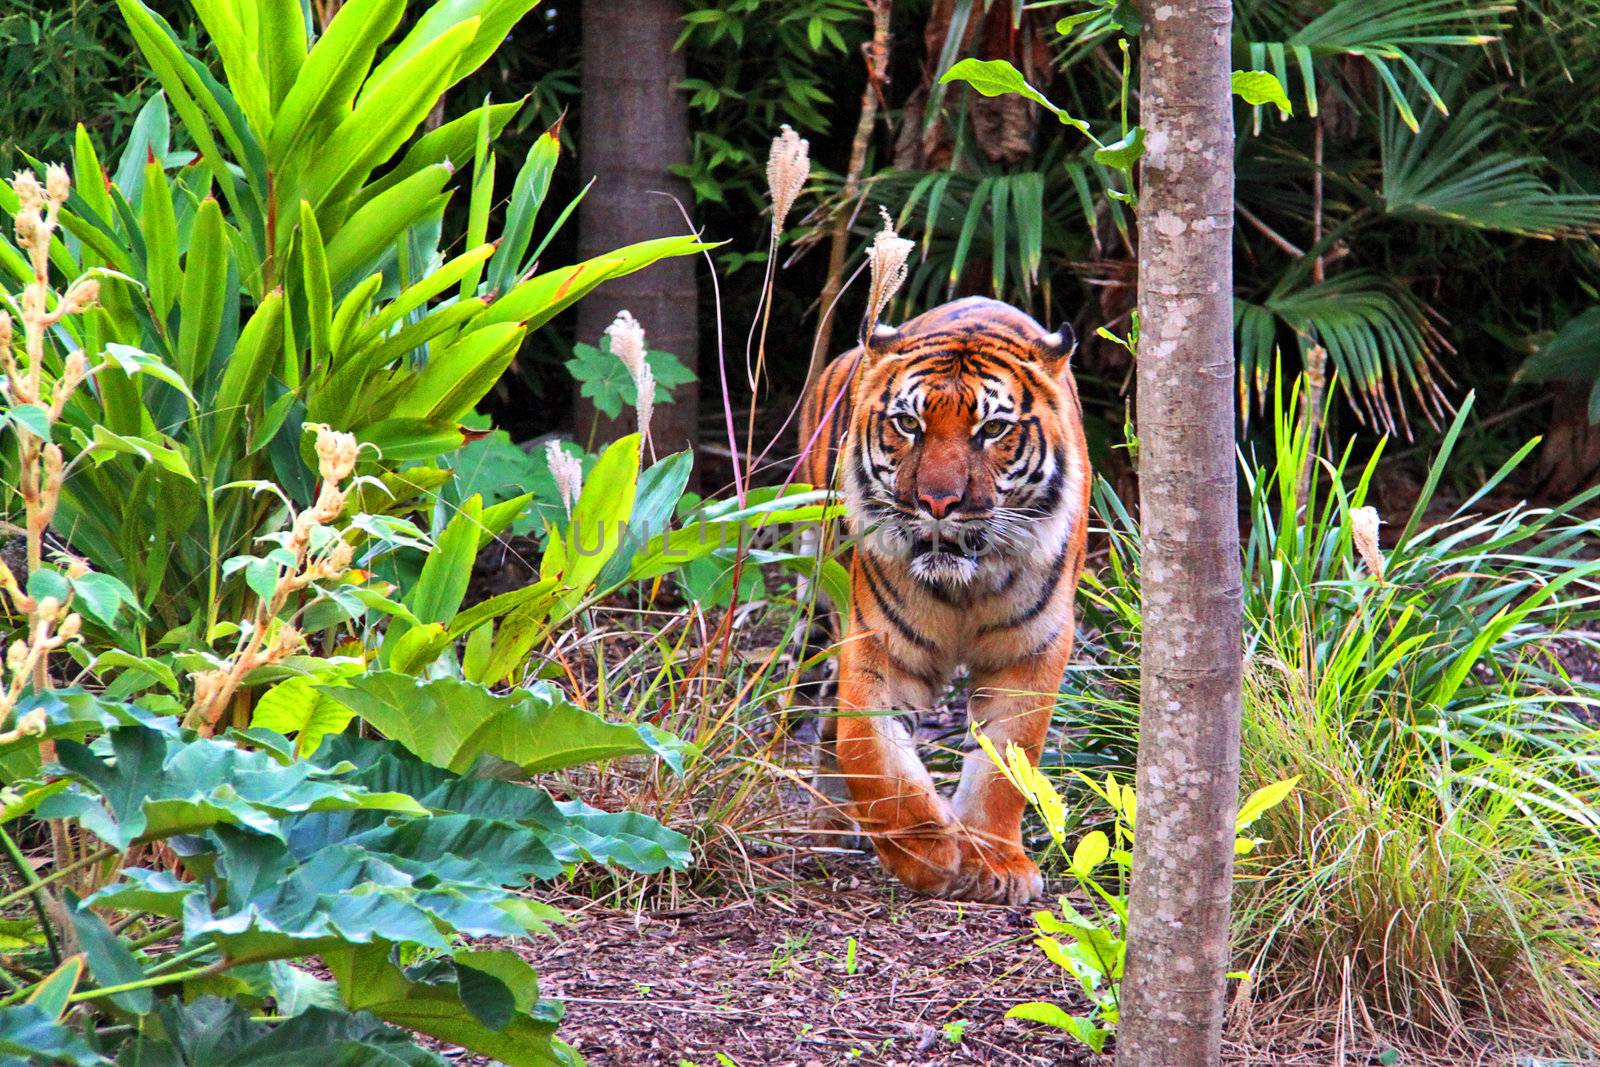 Siberian Tiger walking through vegetation